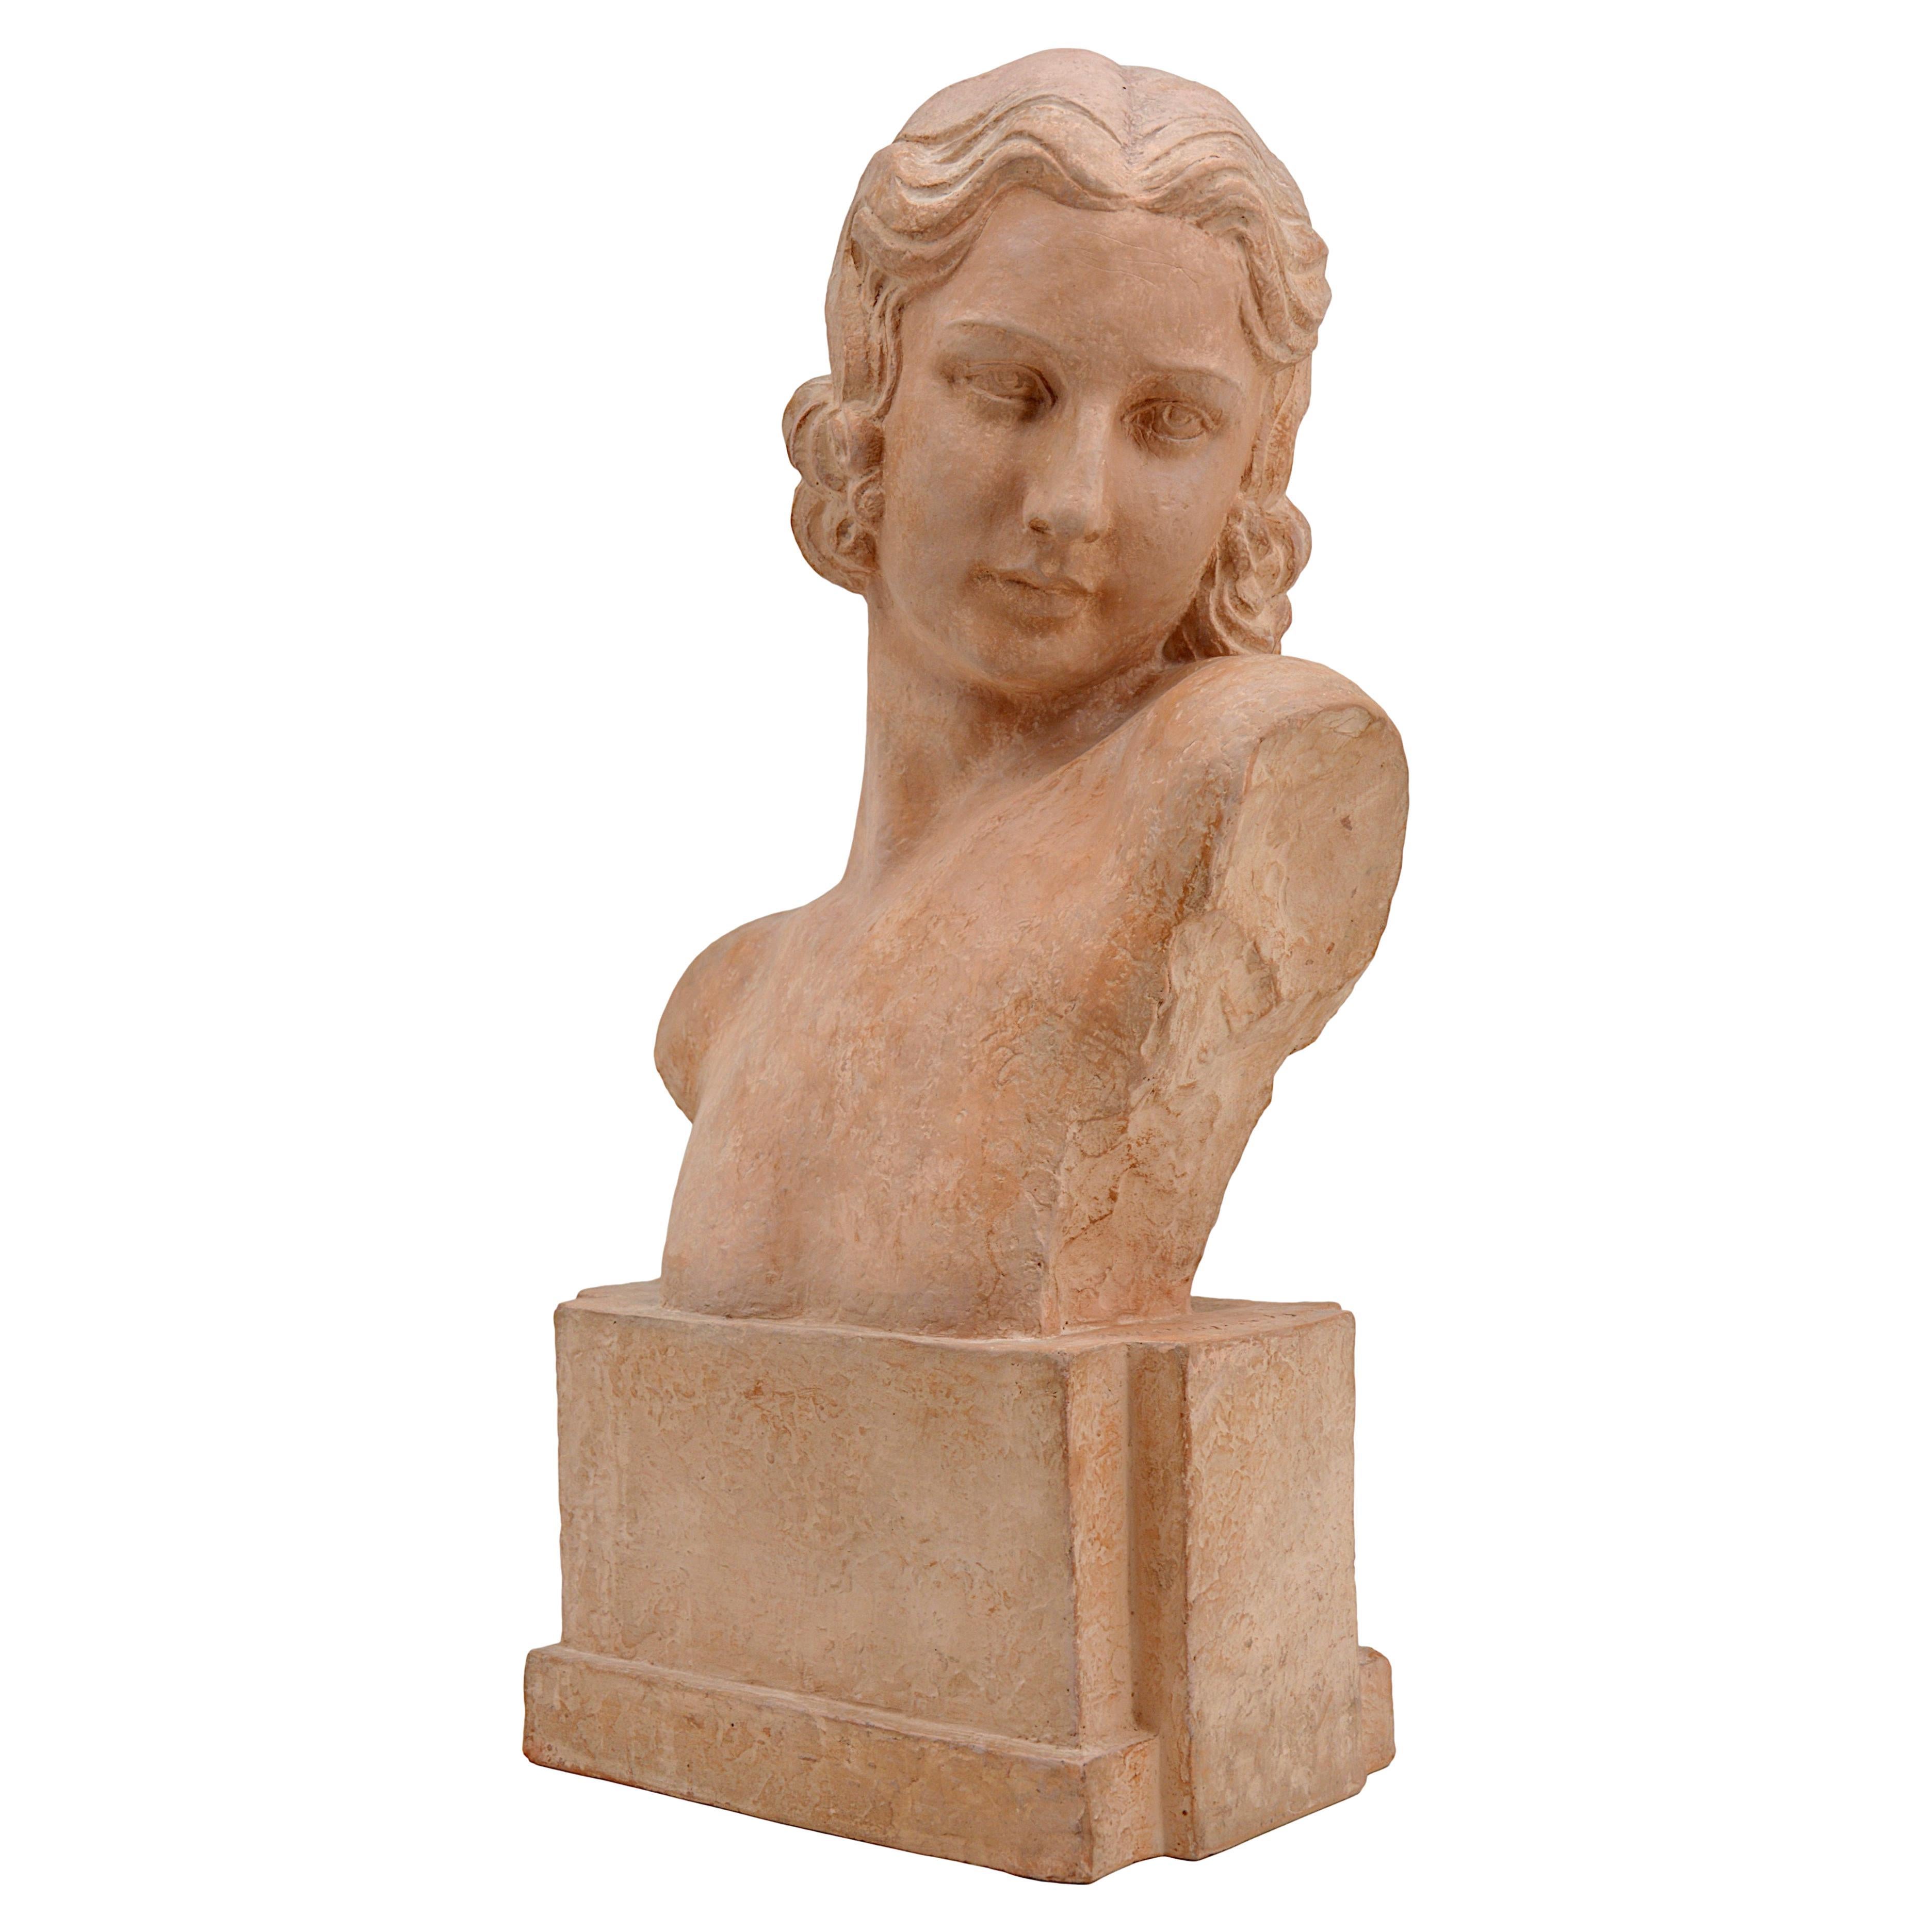 Demetre Chiparus French Art Deco Terracotta Lady Bust Sculpture, 1920s